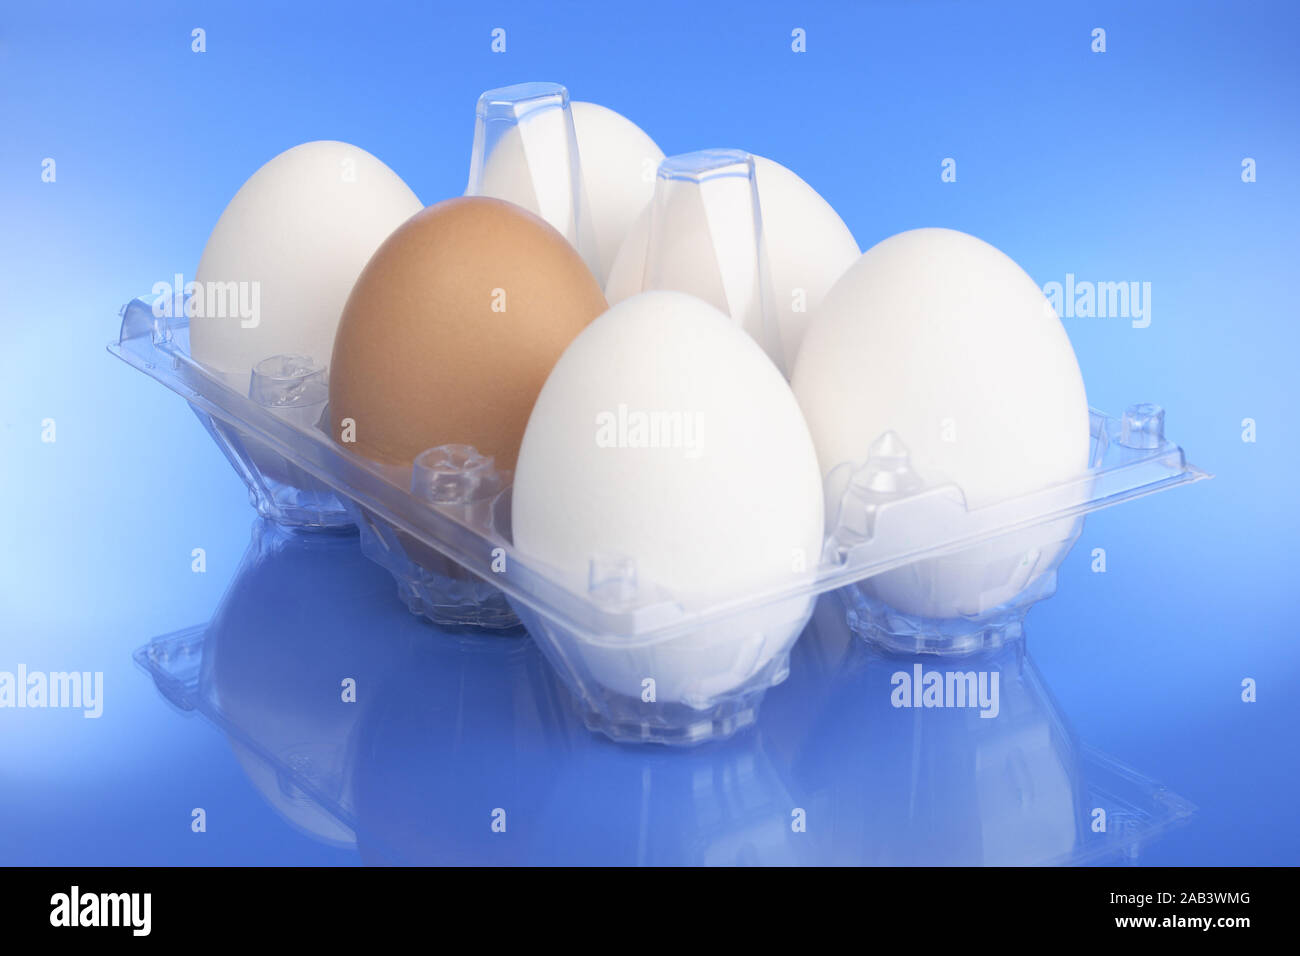 Packung mit frischen Eiern |Pack of fresh eggs| Stock Photo